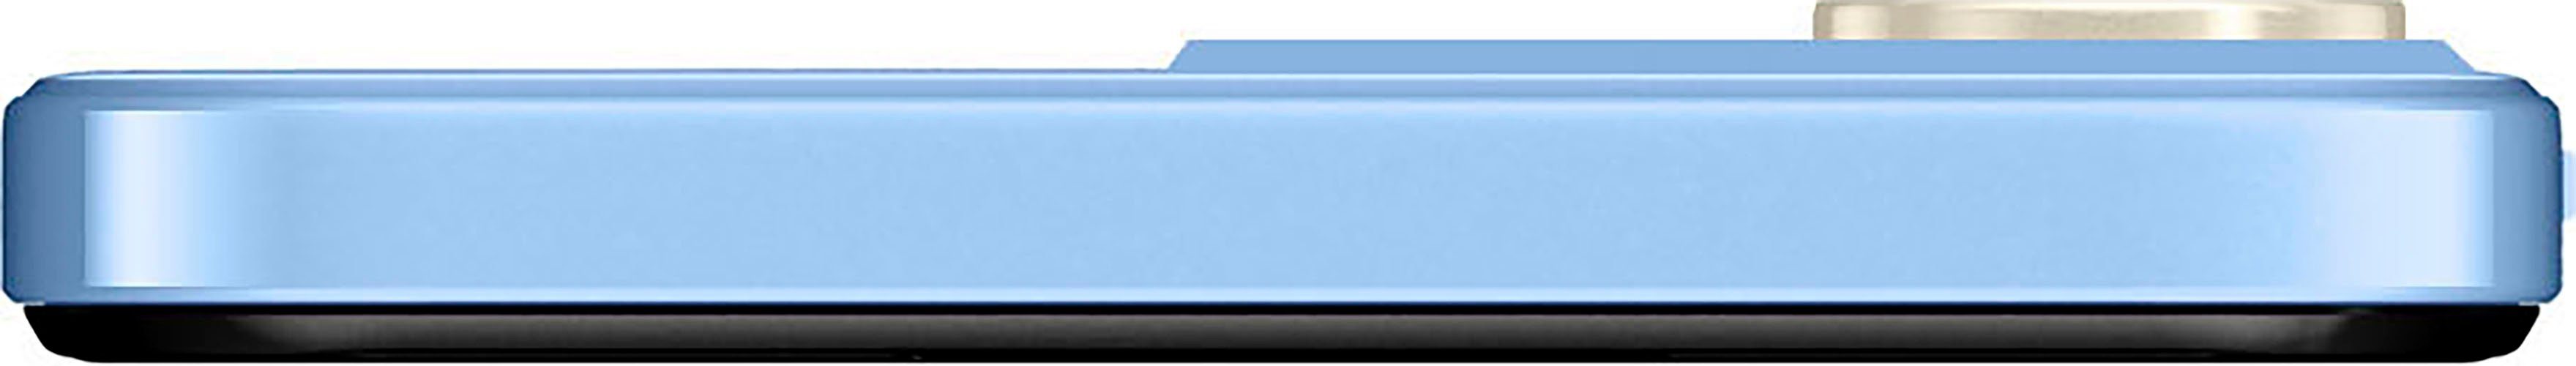 blau ZTE Zoll, Blade 50 (16,76 Kamera) GB A73 cm/6,6 128 Smartphone MP Speicherplatz,